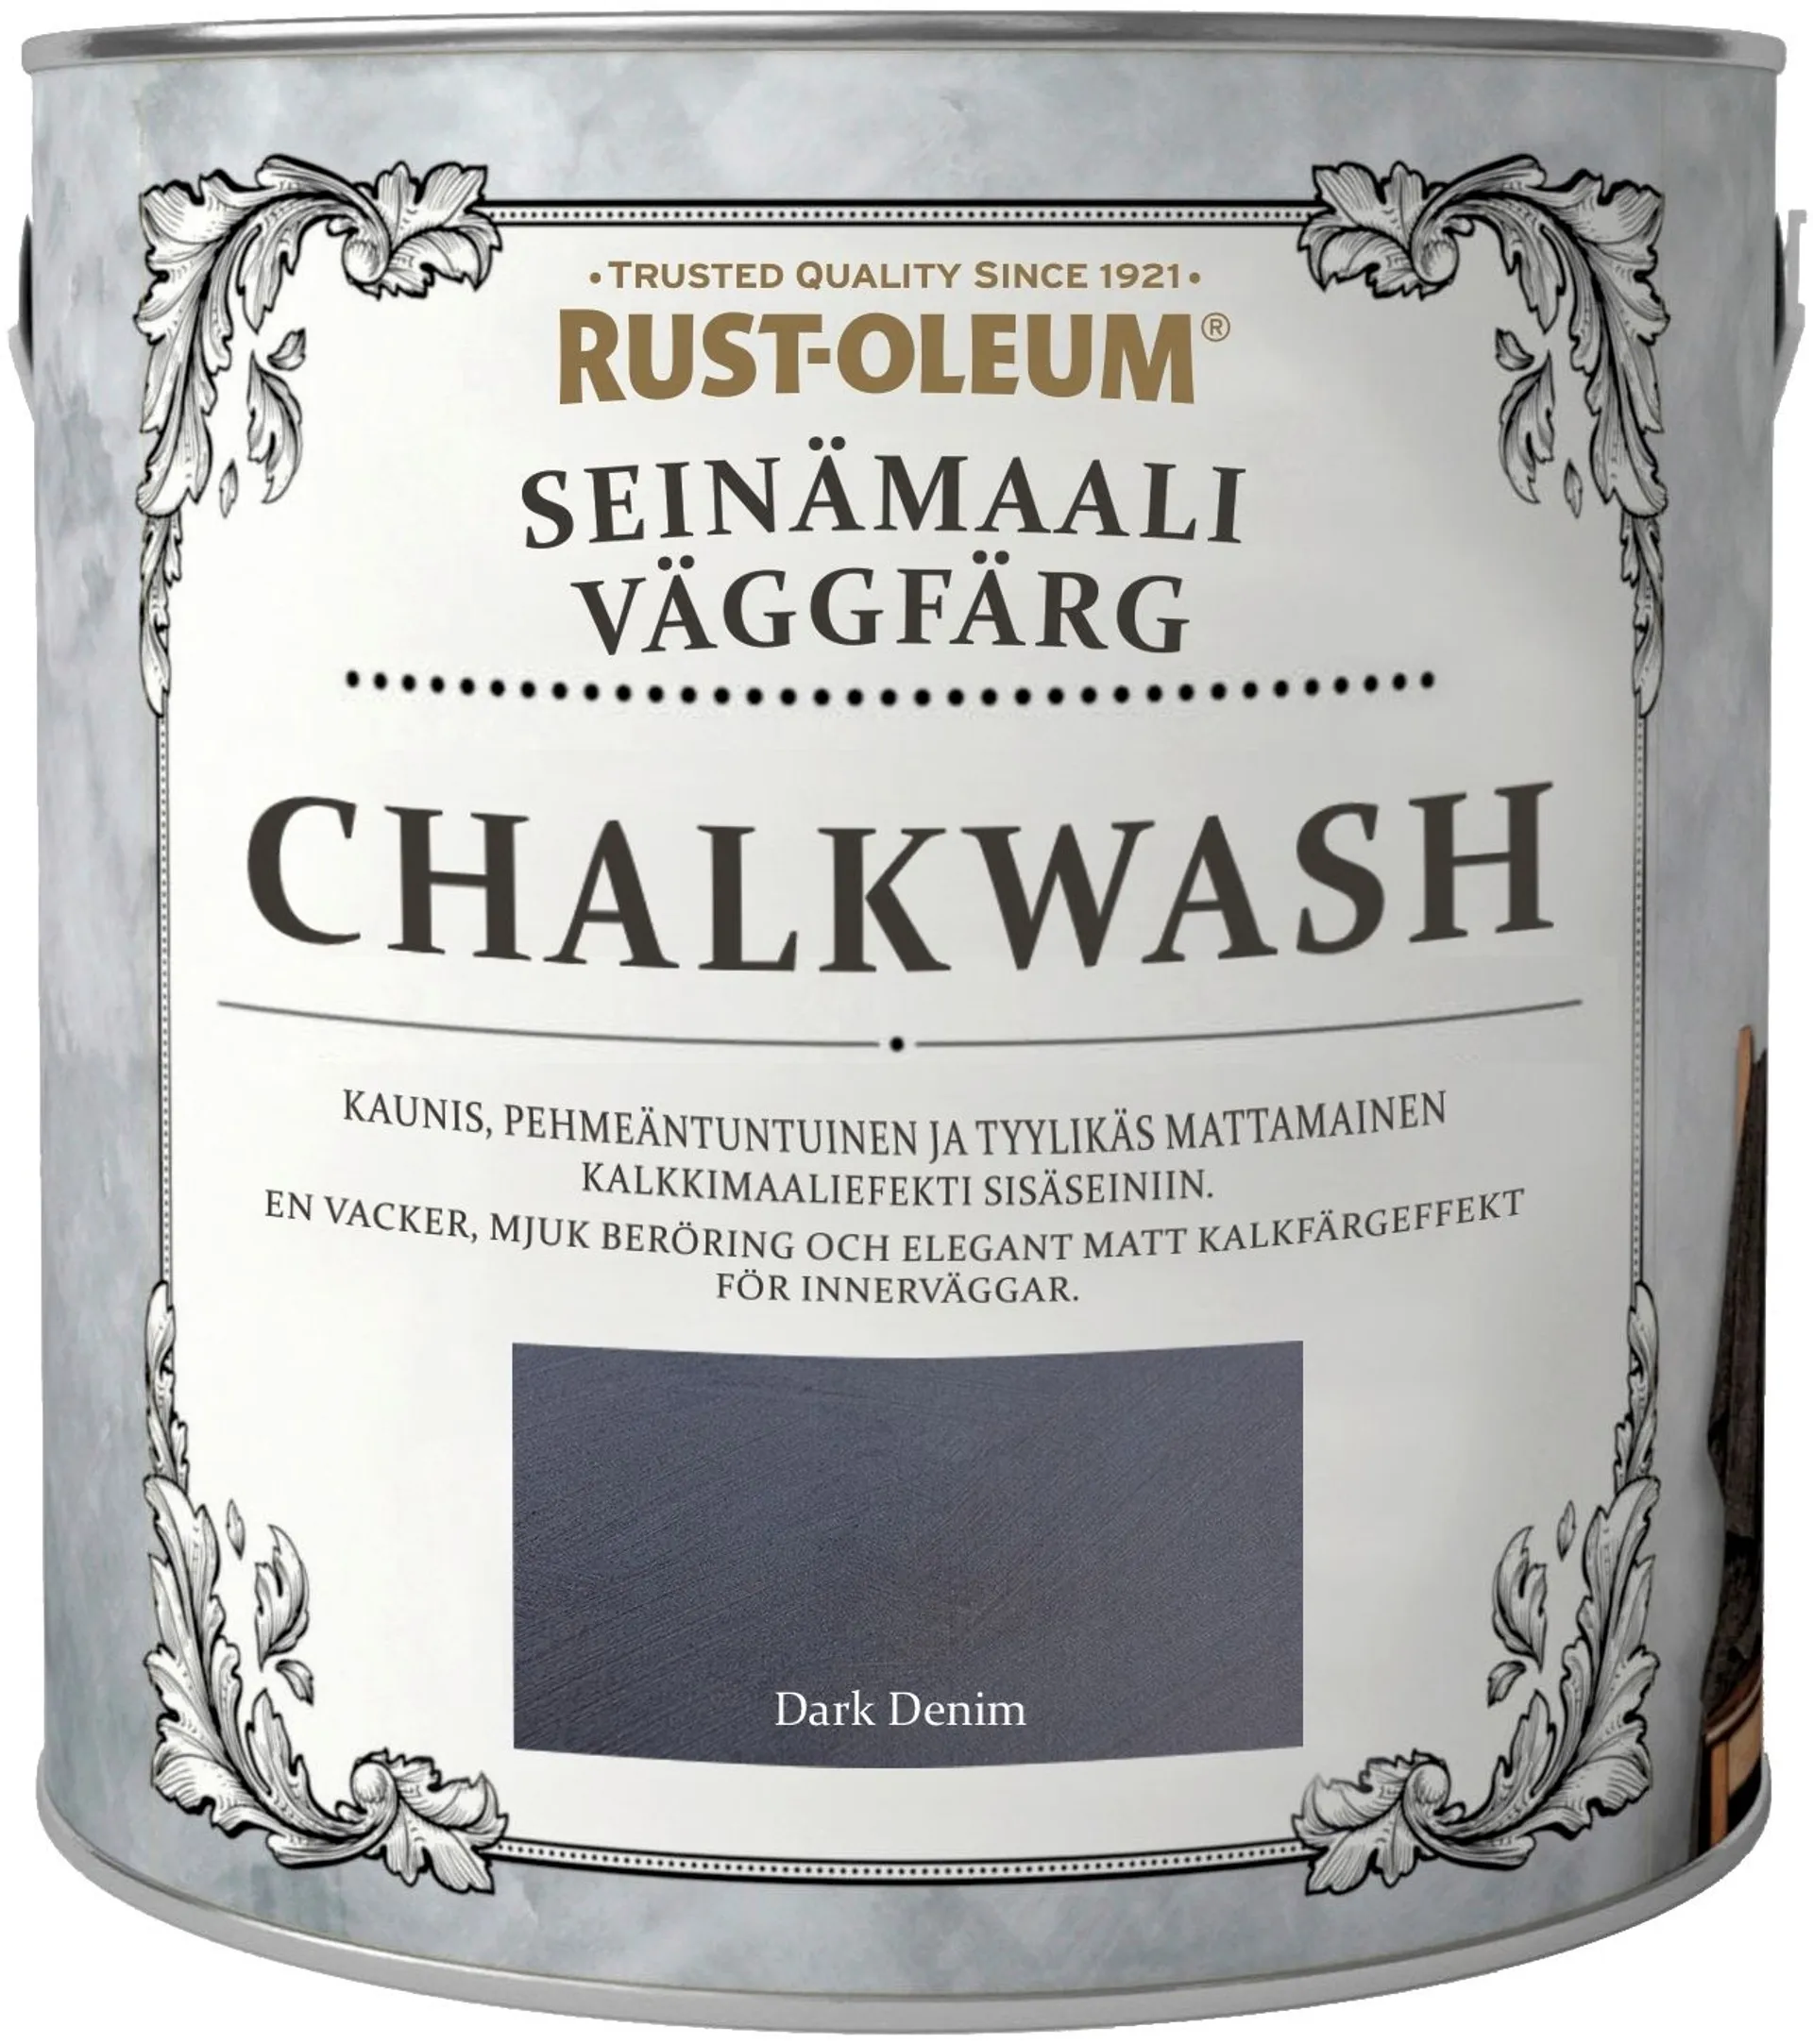 Rust-Oleum Chalkwash 2,5L Dark Denim Seinämaali - 1